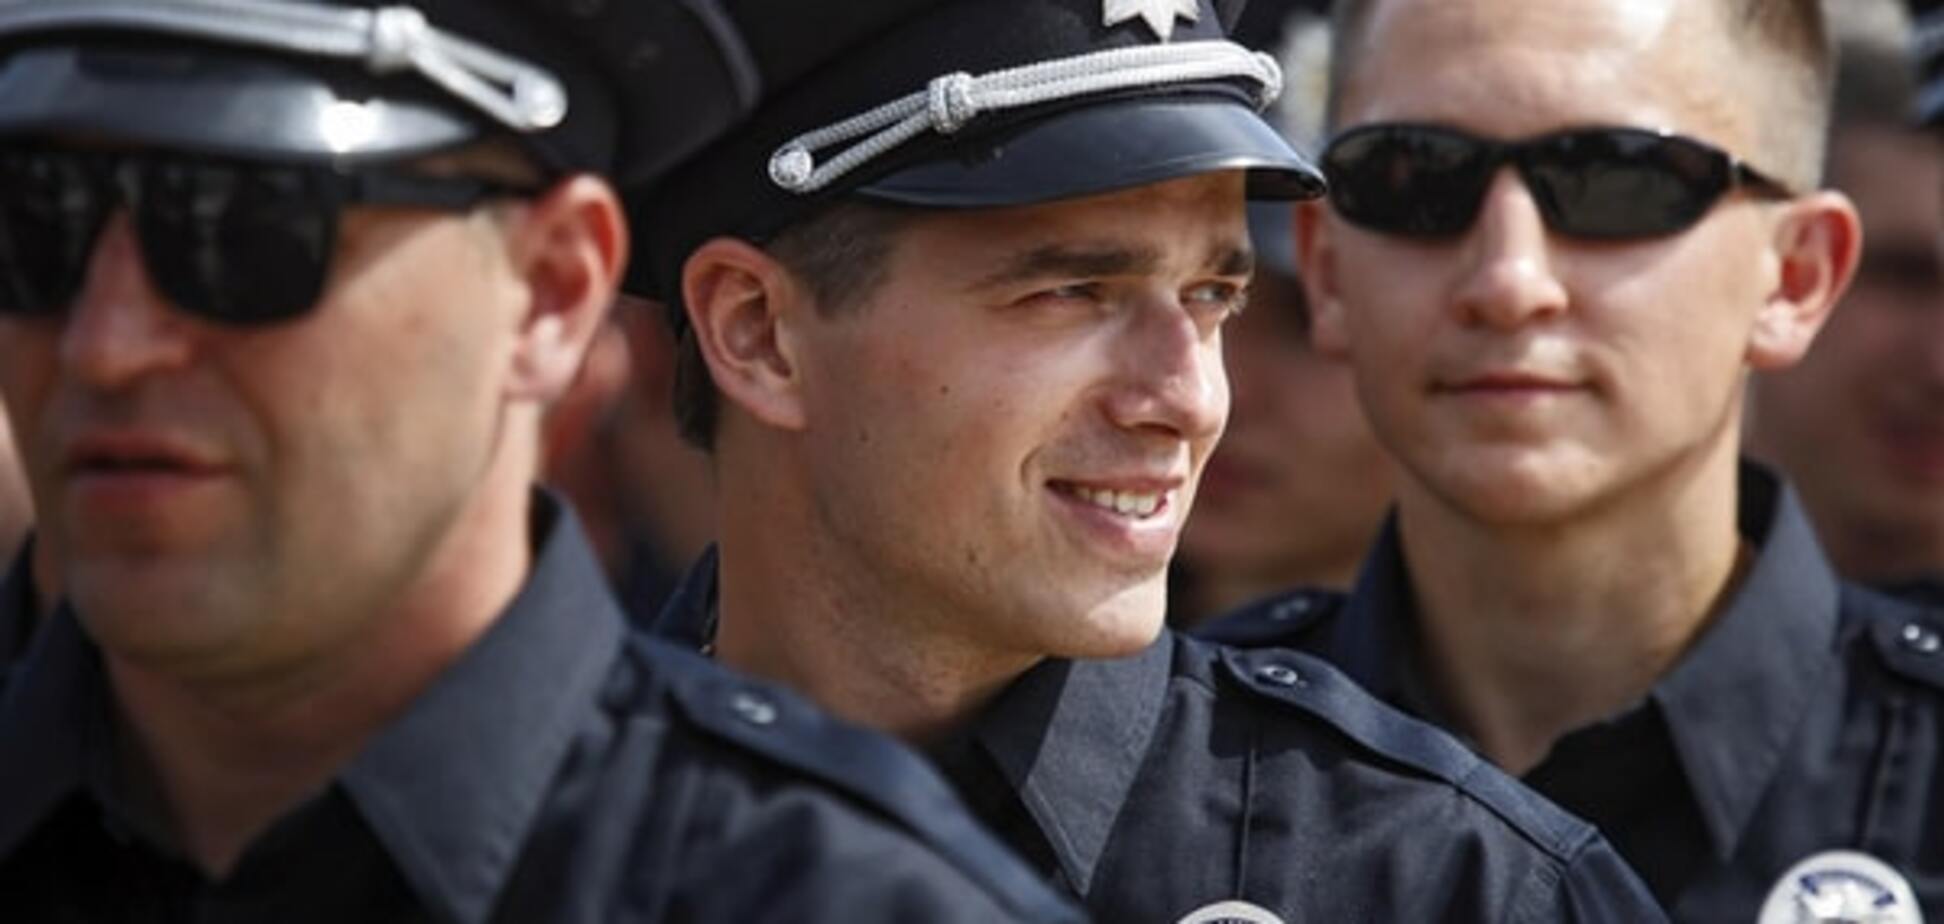 Найєм назвав найдорожчий елемент екіпірування українського поліцейського